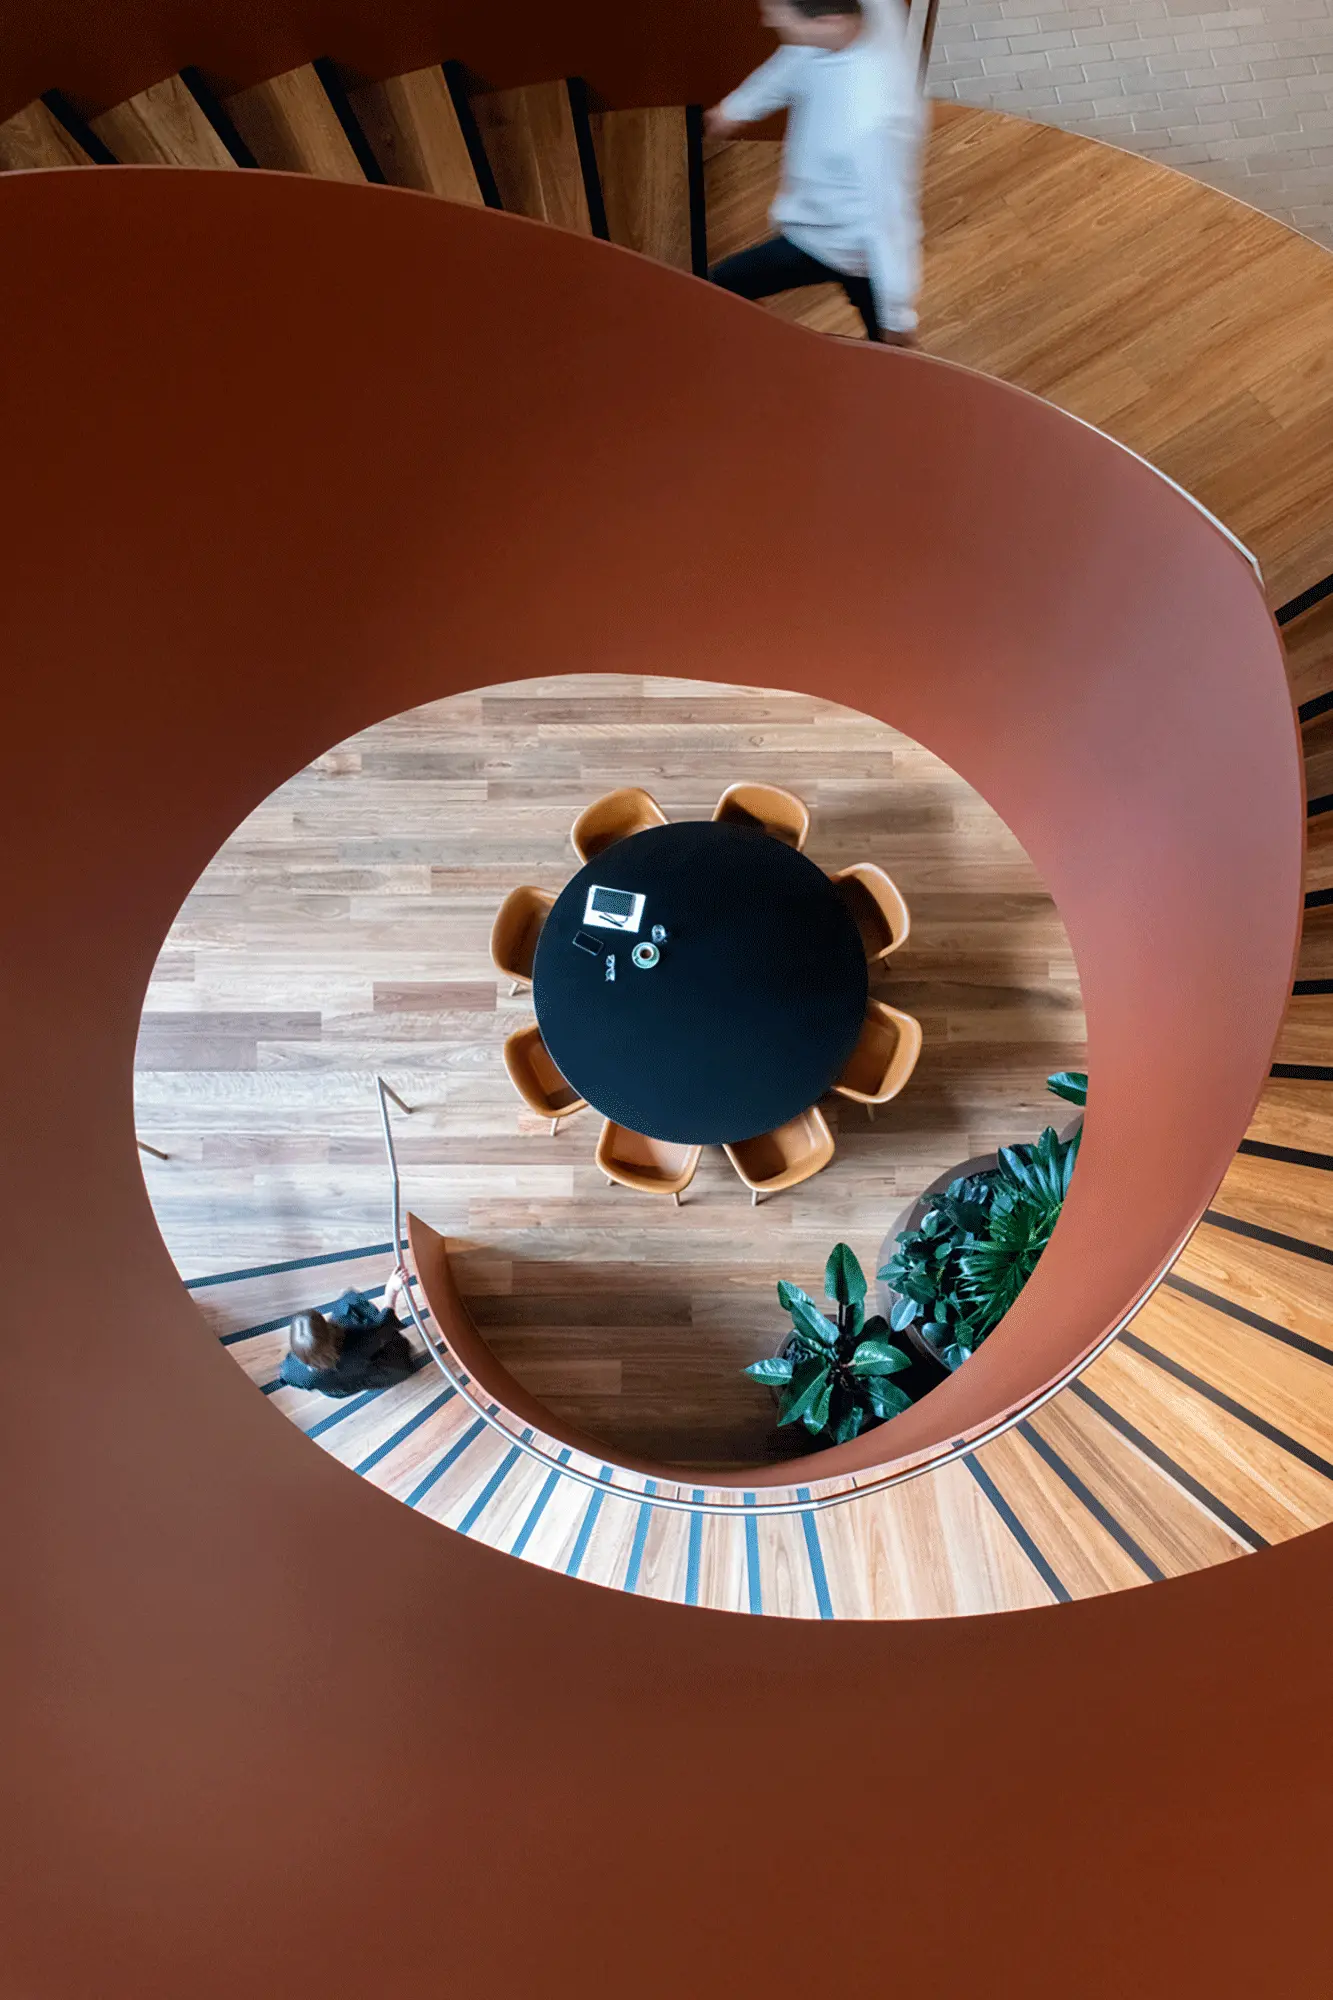 Circular wooden staircase